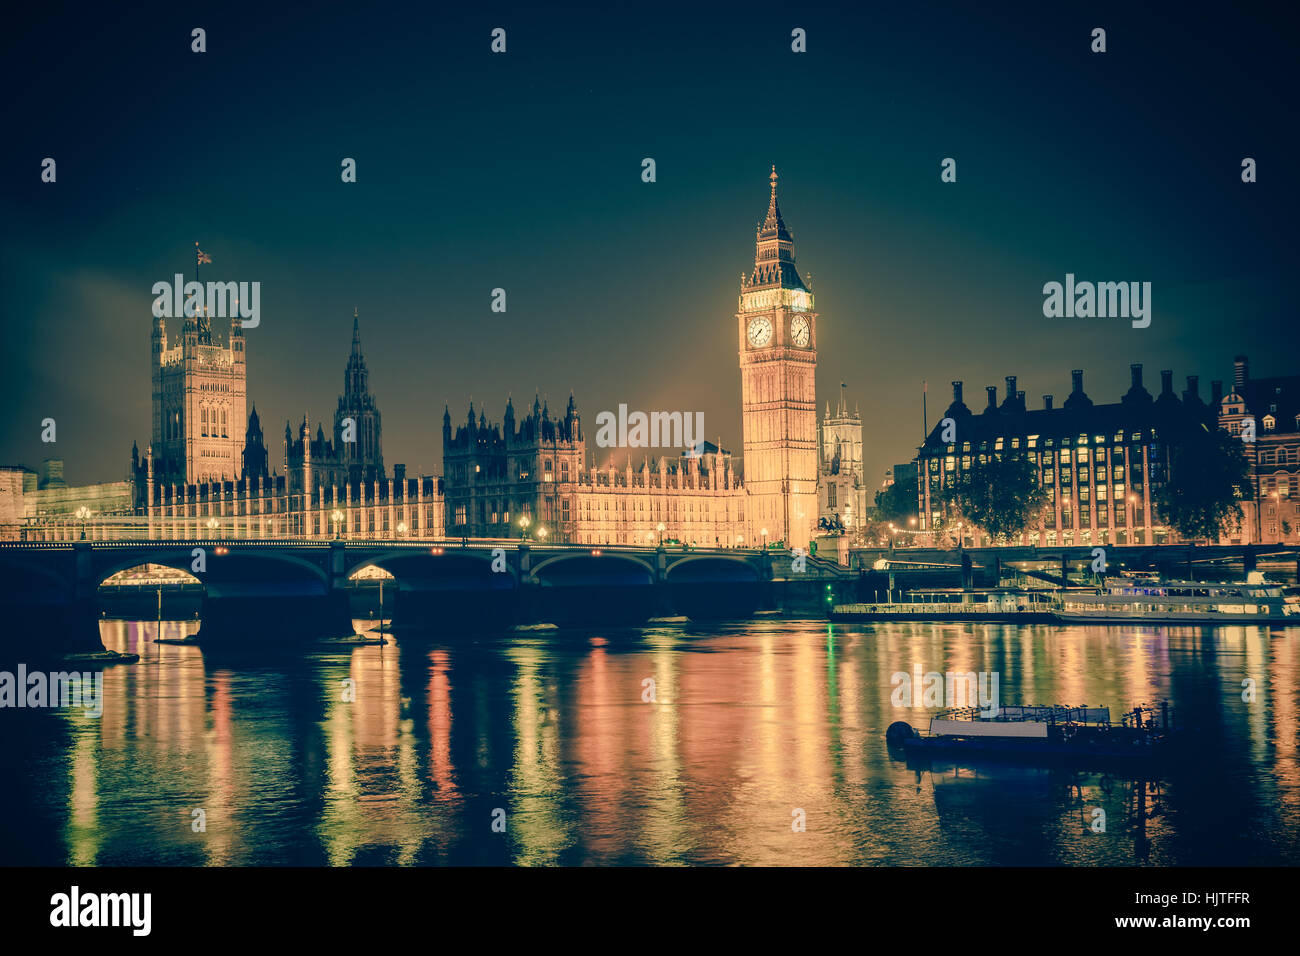 Vista iconica Westminster con il Big Ben, la Casa del Parlamento e il Tamigi a Victoria Embankment illuminata di notte con tono vintage. Foto Stock